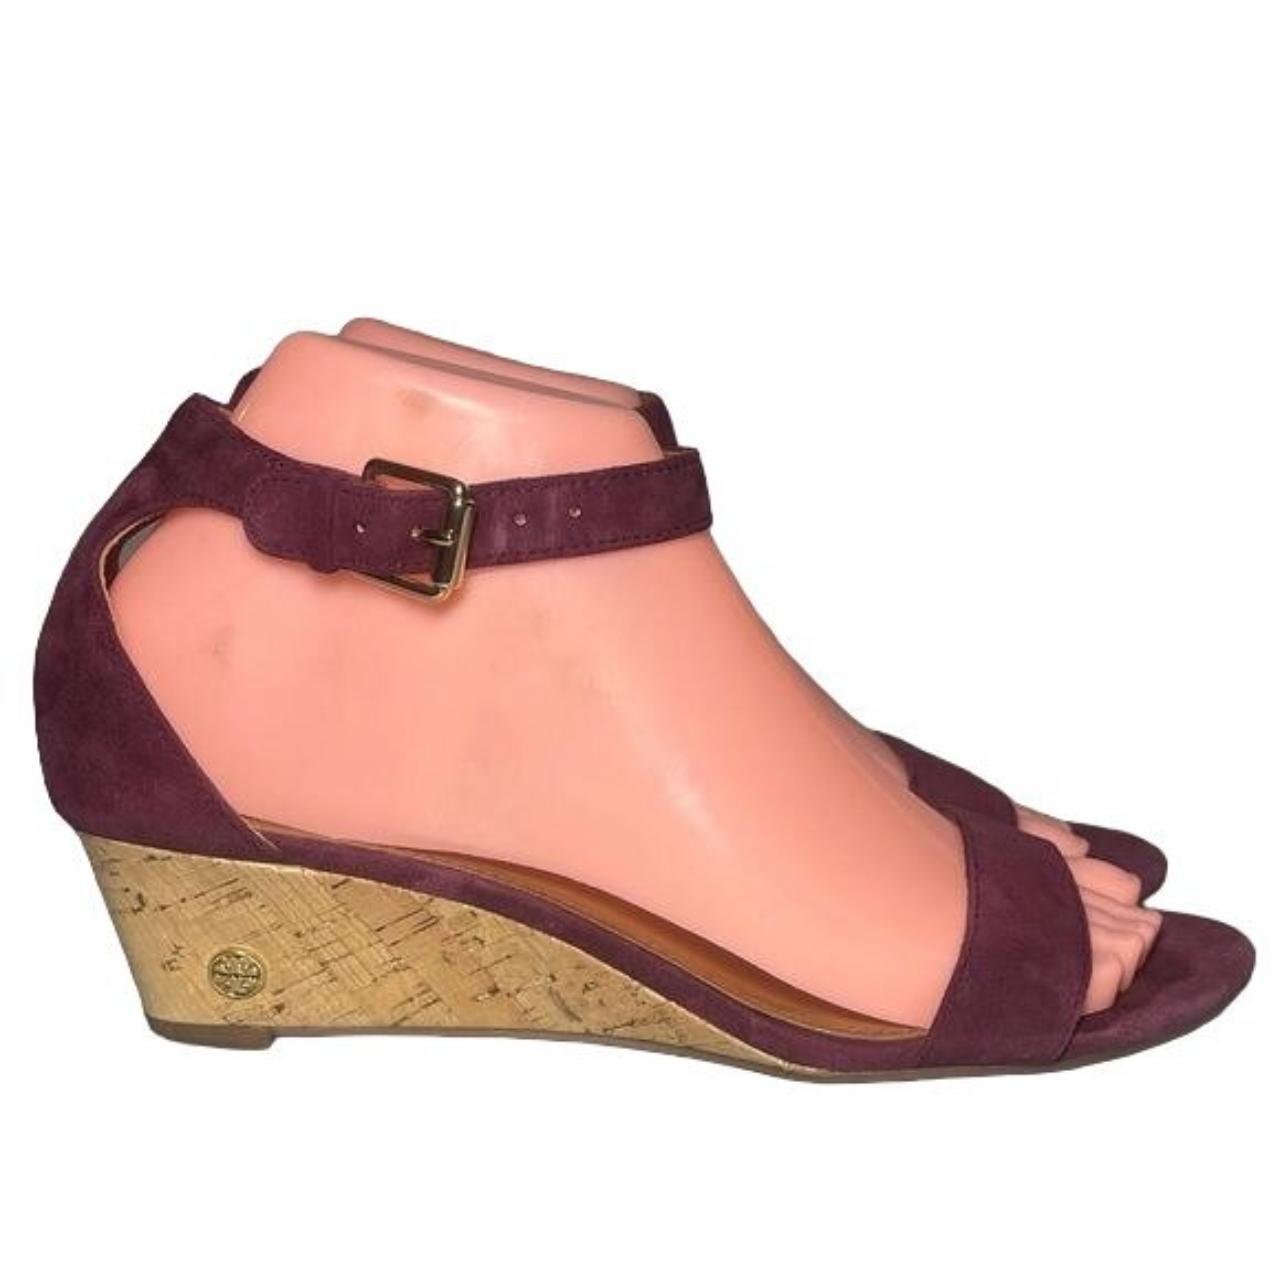 Tory Burch Women's Burgundy Sandals | Depop